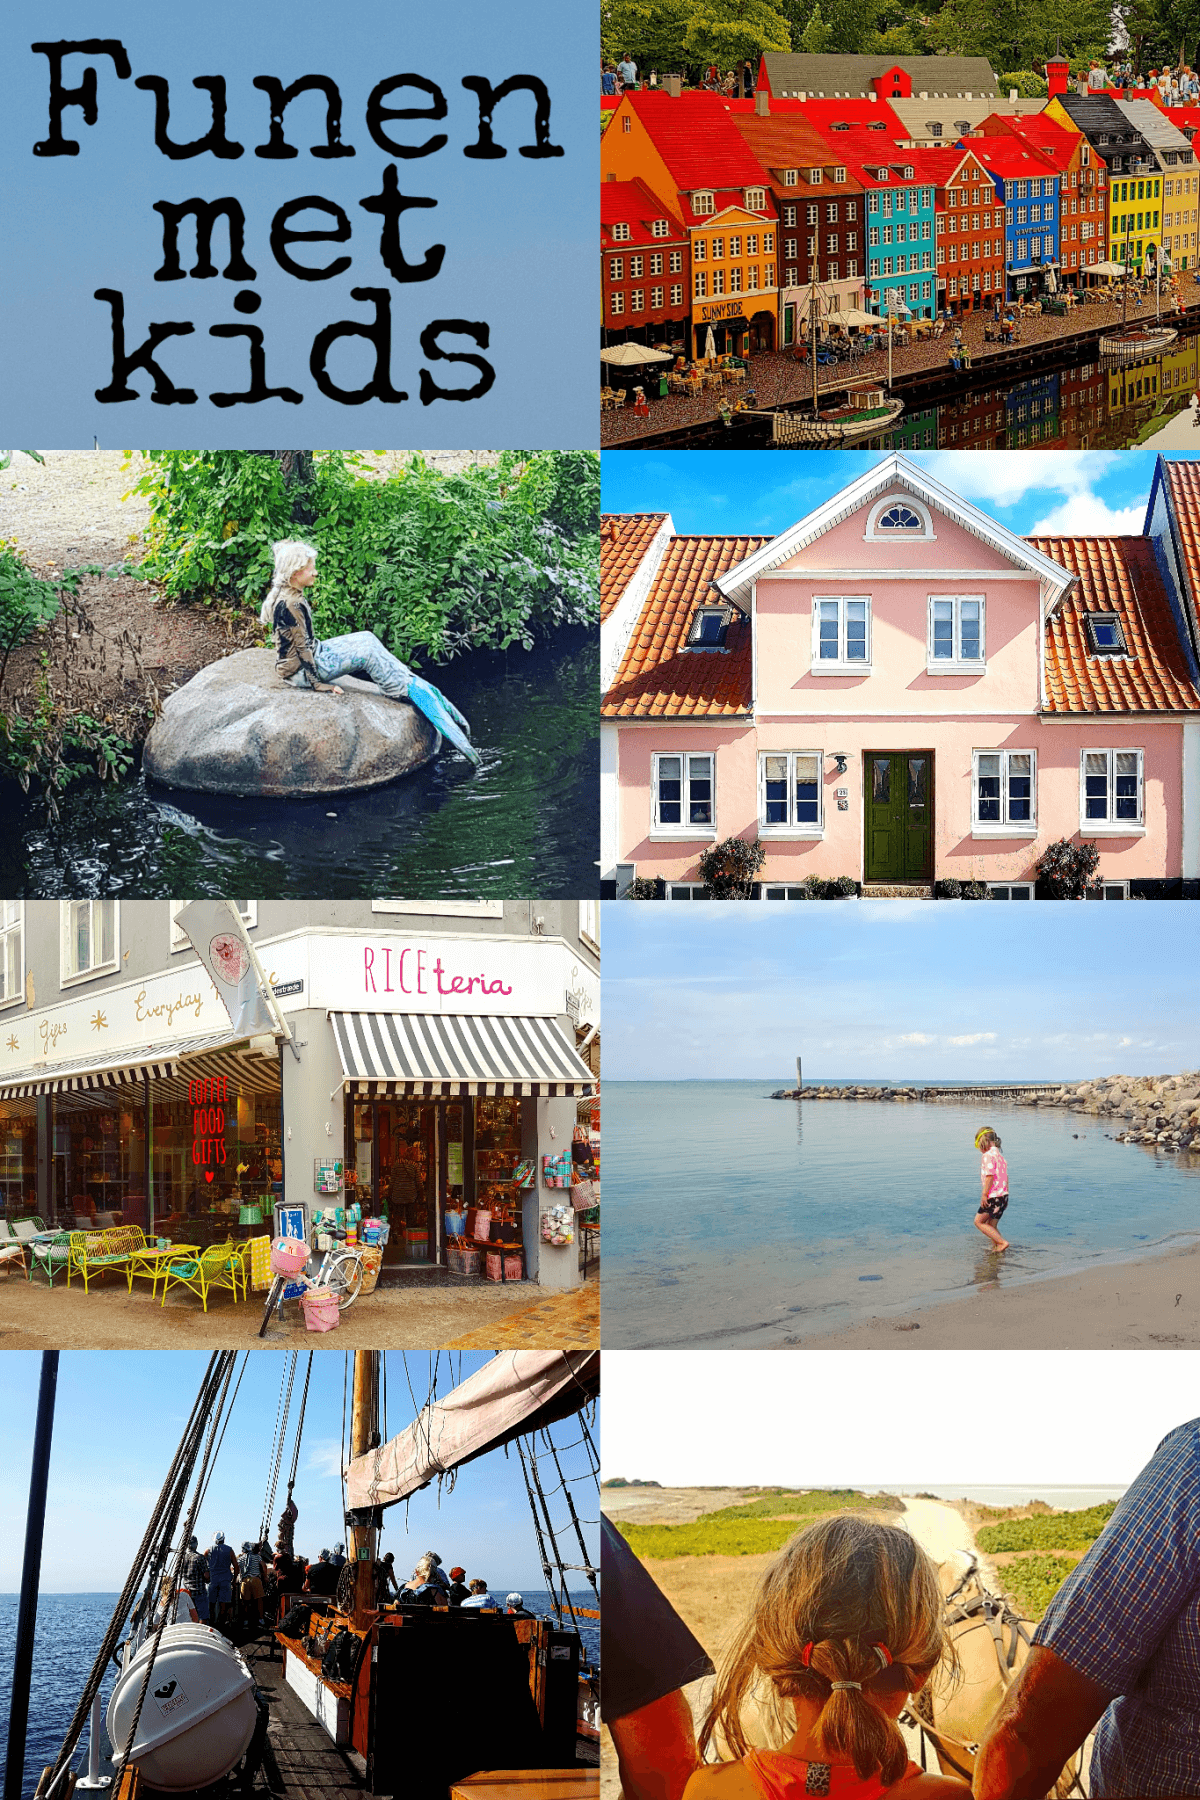 Vakantie met kids: sprookjesachtig Funen in Denemarken #leukmetkids #Denemarken #Funen